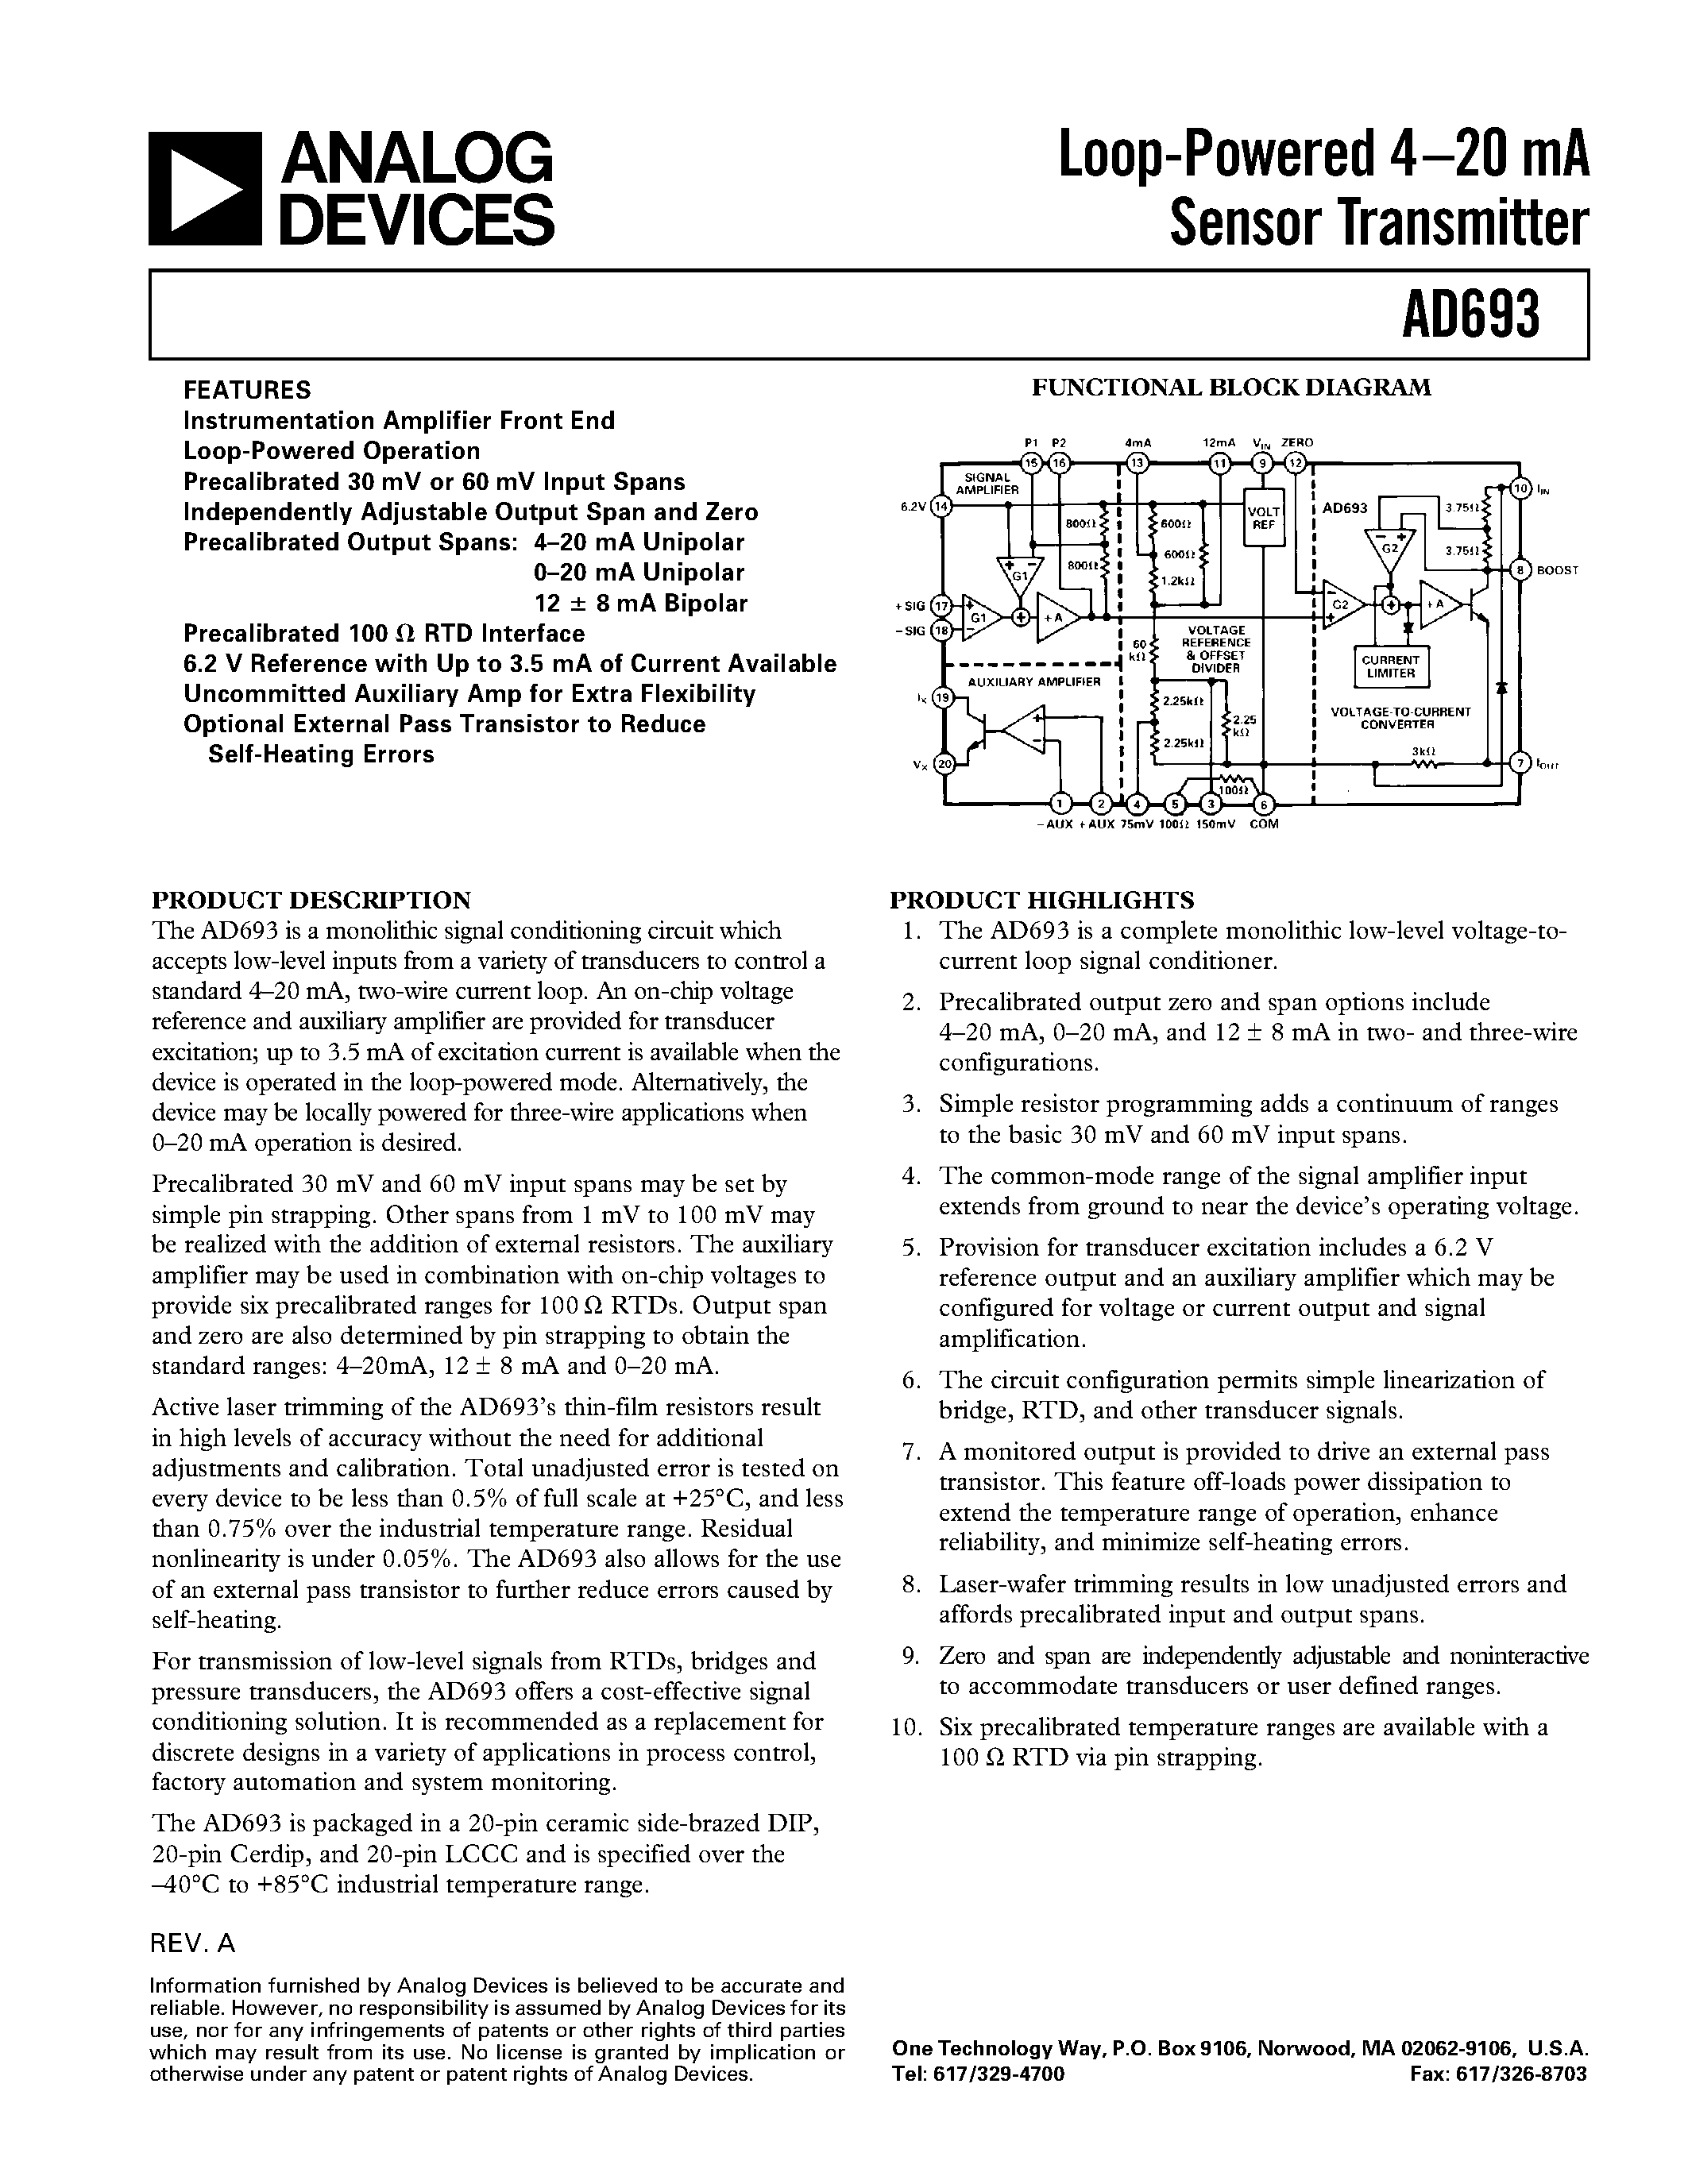 Даташит AD693AQ - Loop-Powered 4.20 mA Sensor Transmitter страница 1